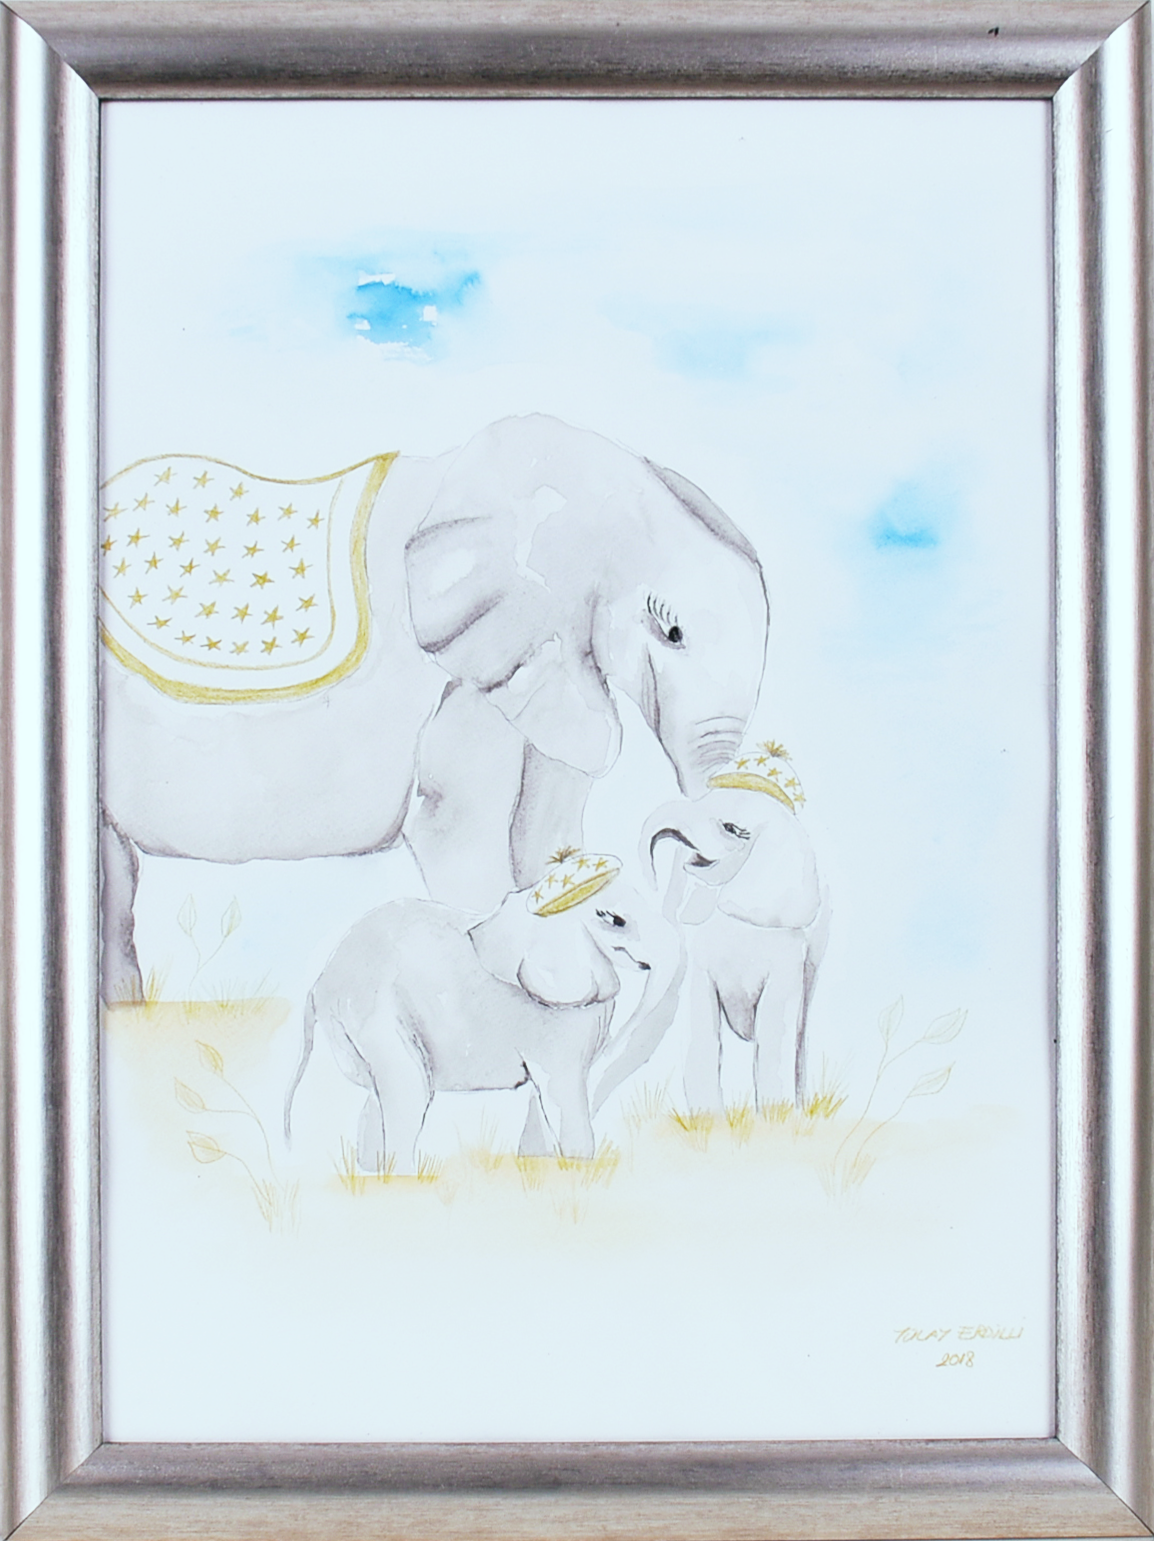 Anne Fil ve Yavruları - Mavi